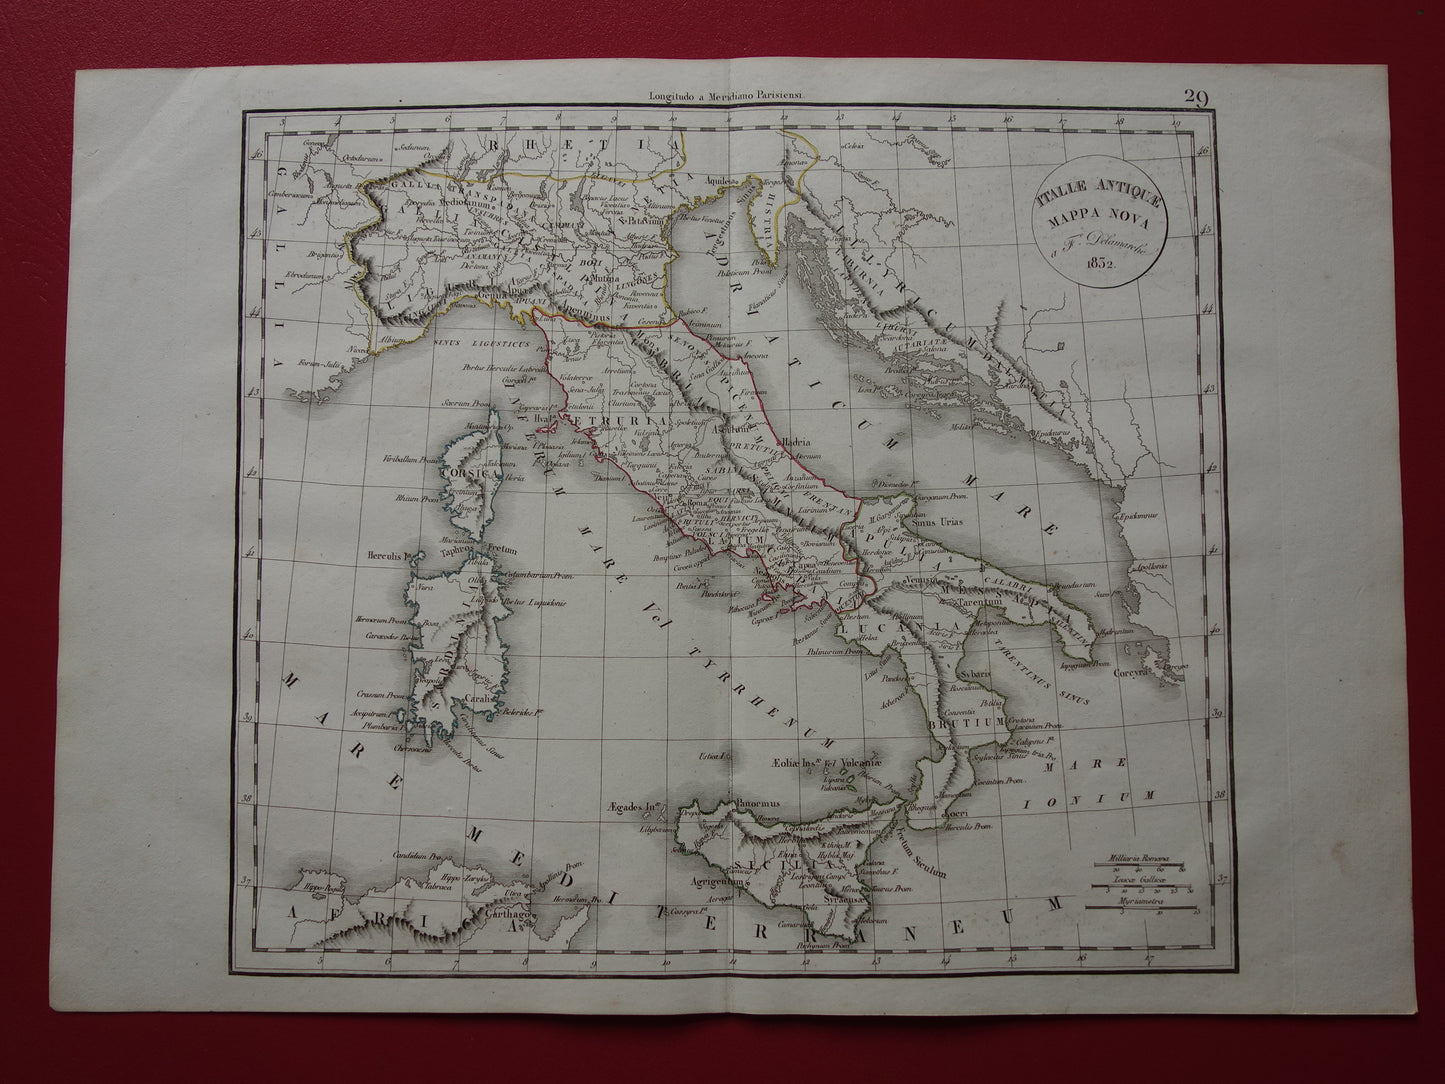 Oude kaart van Italië in de klassieke oudheid - originele antieke landkaart 1832 - vintage geschiedeniskaart Italië